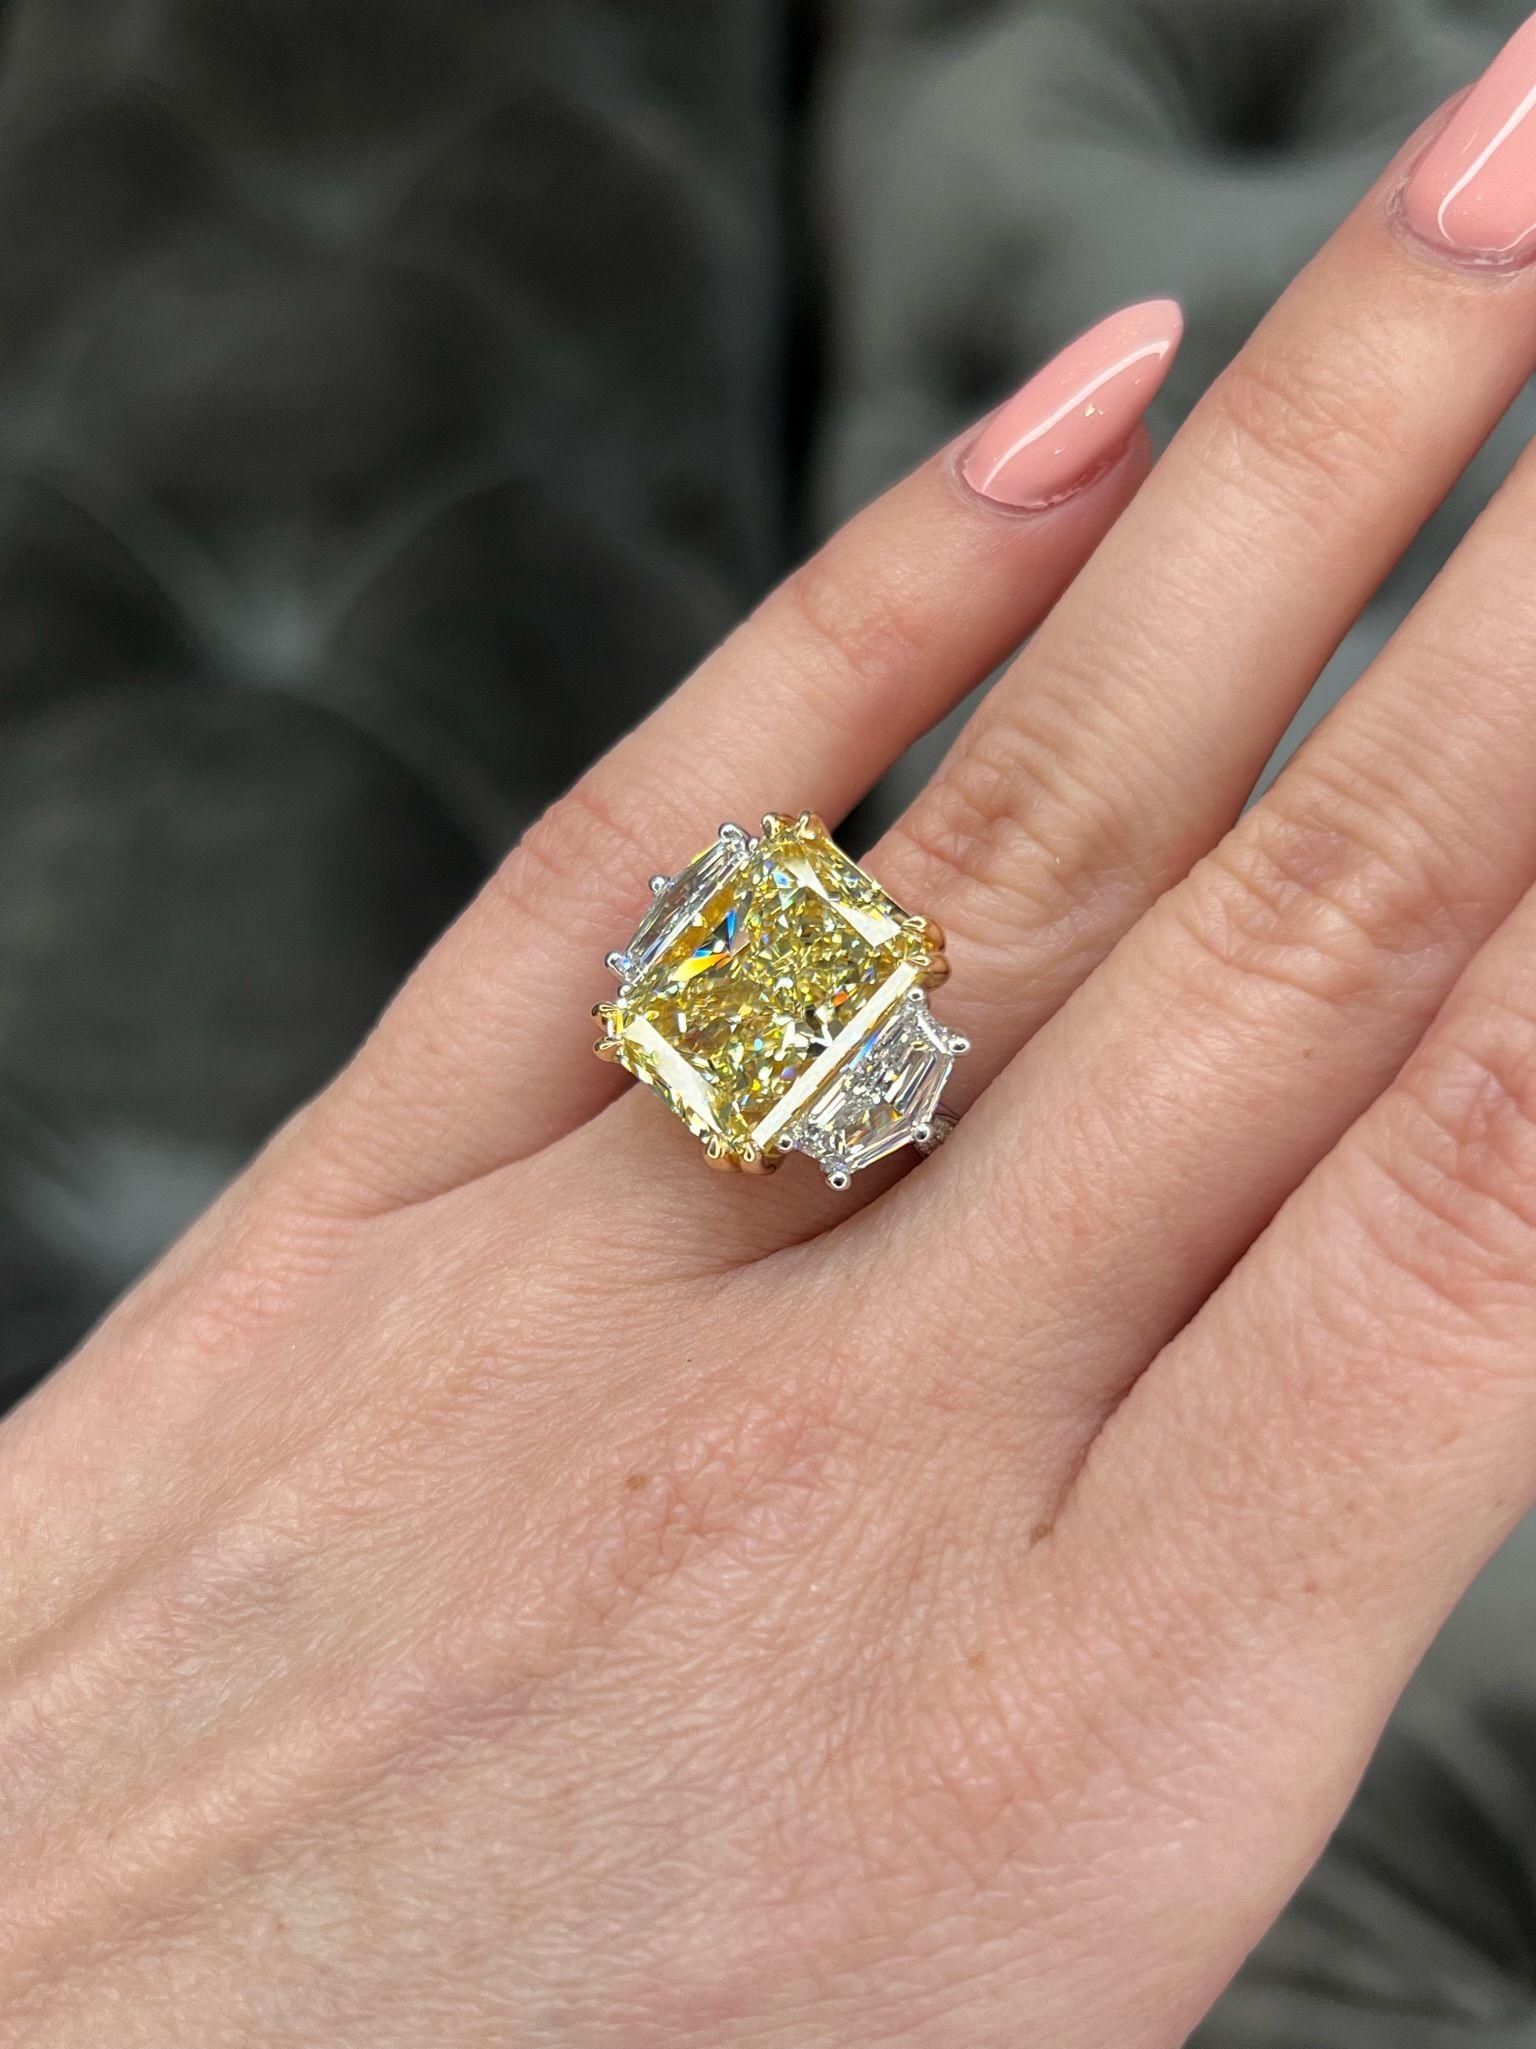 David Rosenberg 11.18 Radiant Fancy Yellow VVS2 GIA Diamond Engagement Ring For Sale 5